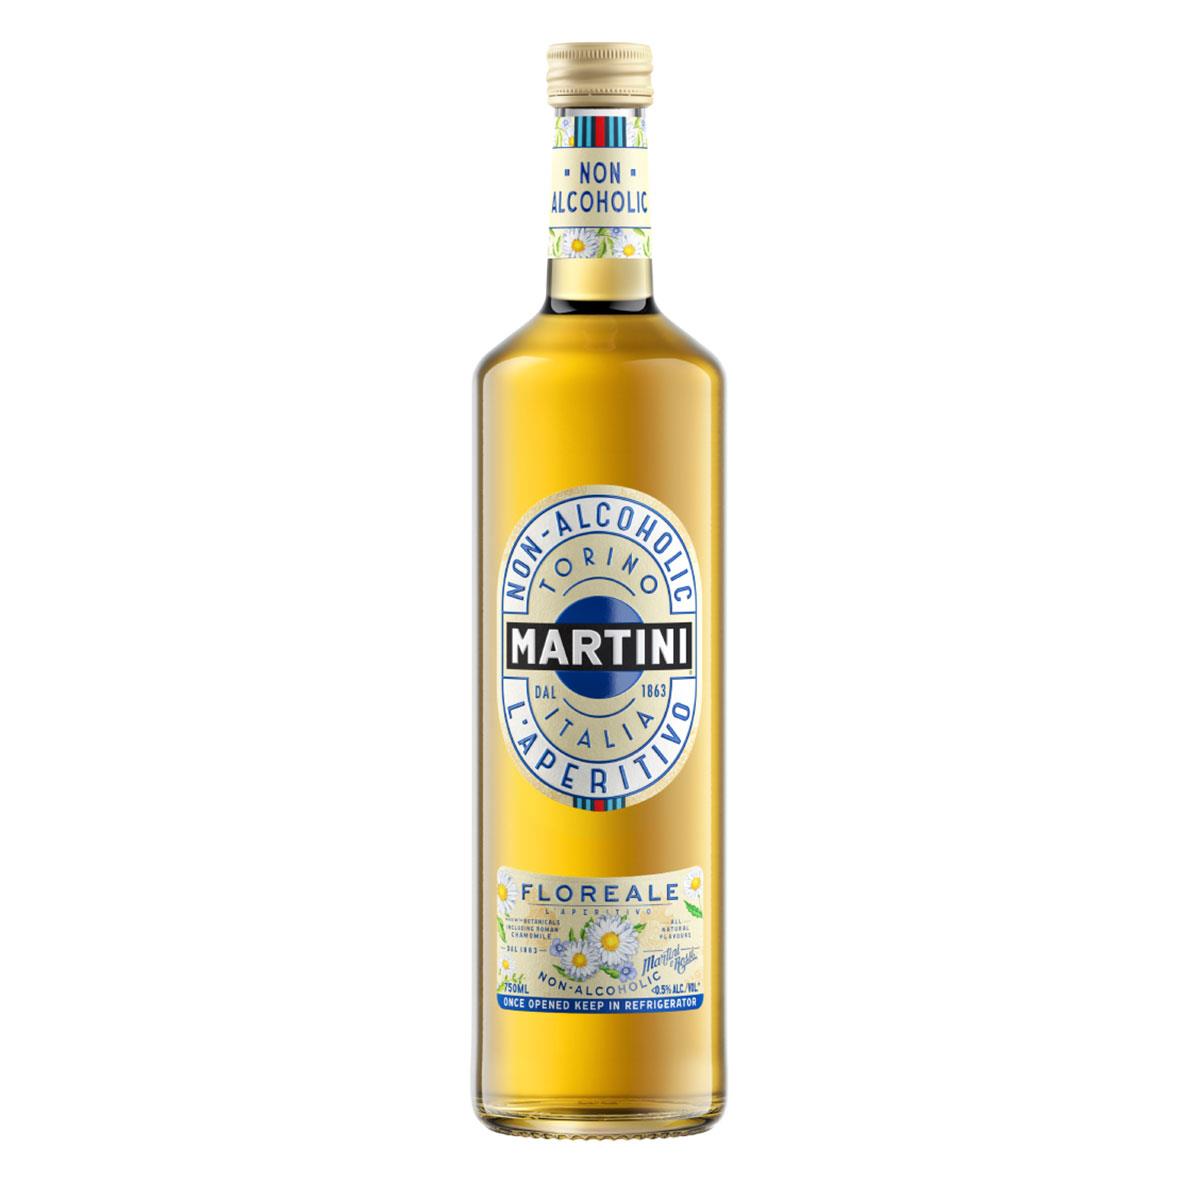 Martini Floreale non alcohol 750ml